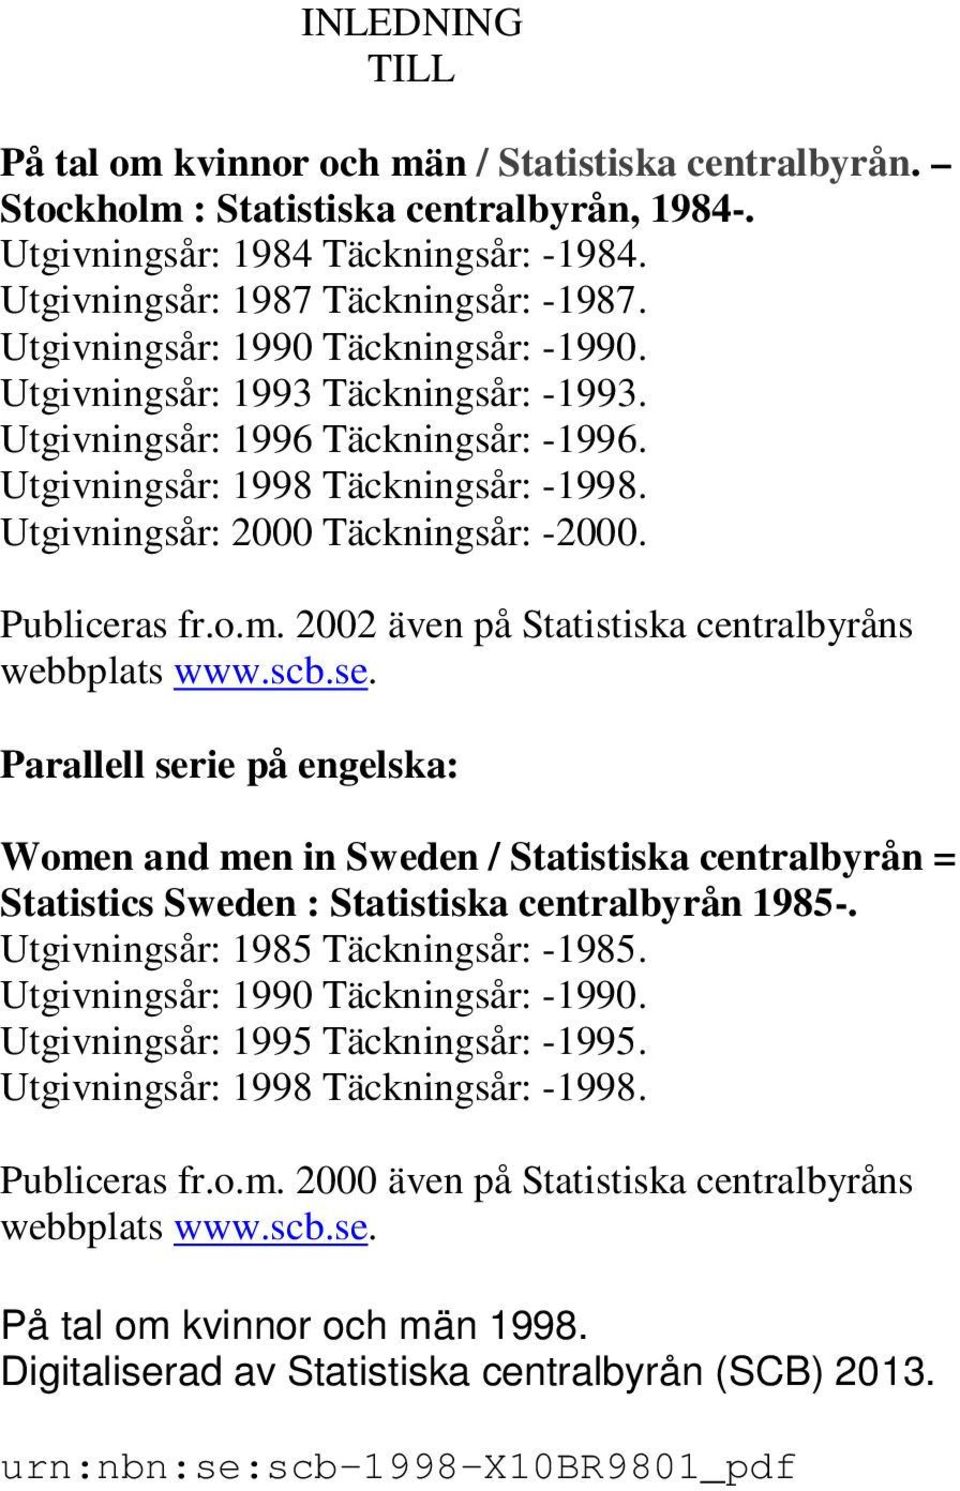 Publiceras fr.o.m. 2002 även på Statistiska centralbyråns webbplats www.scb.se.